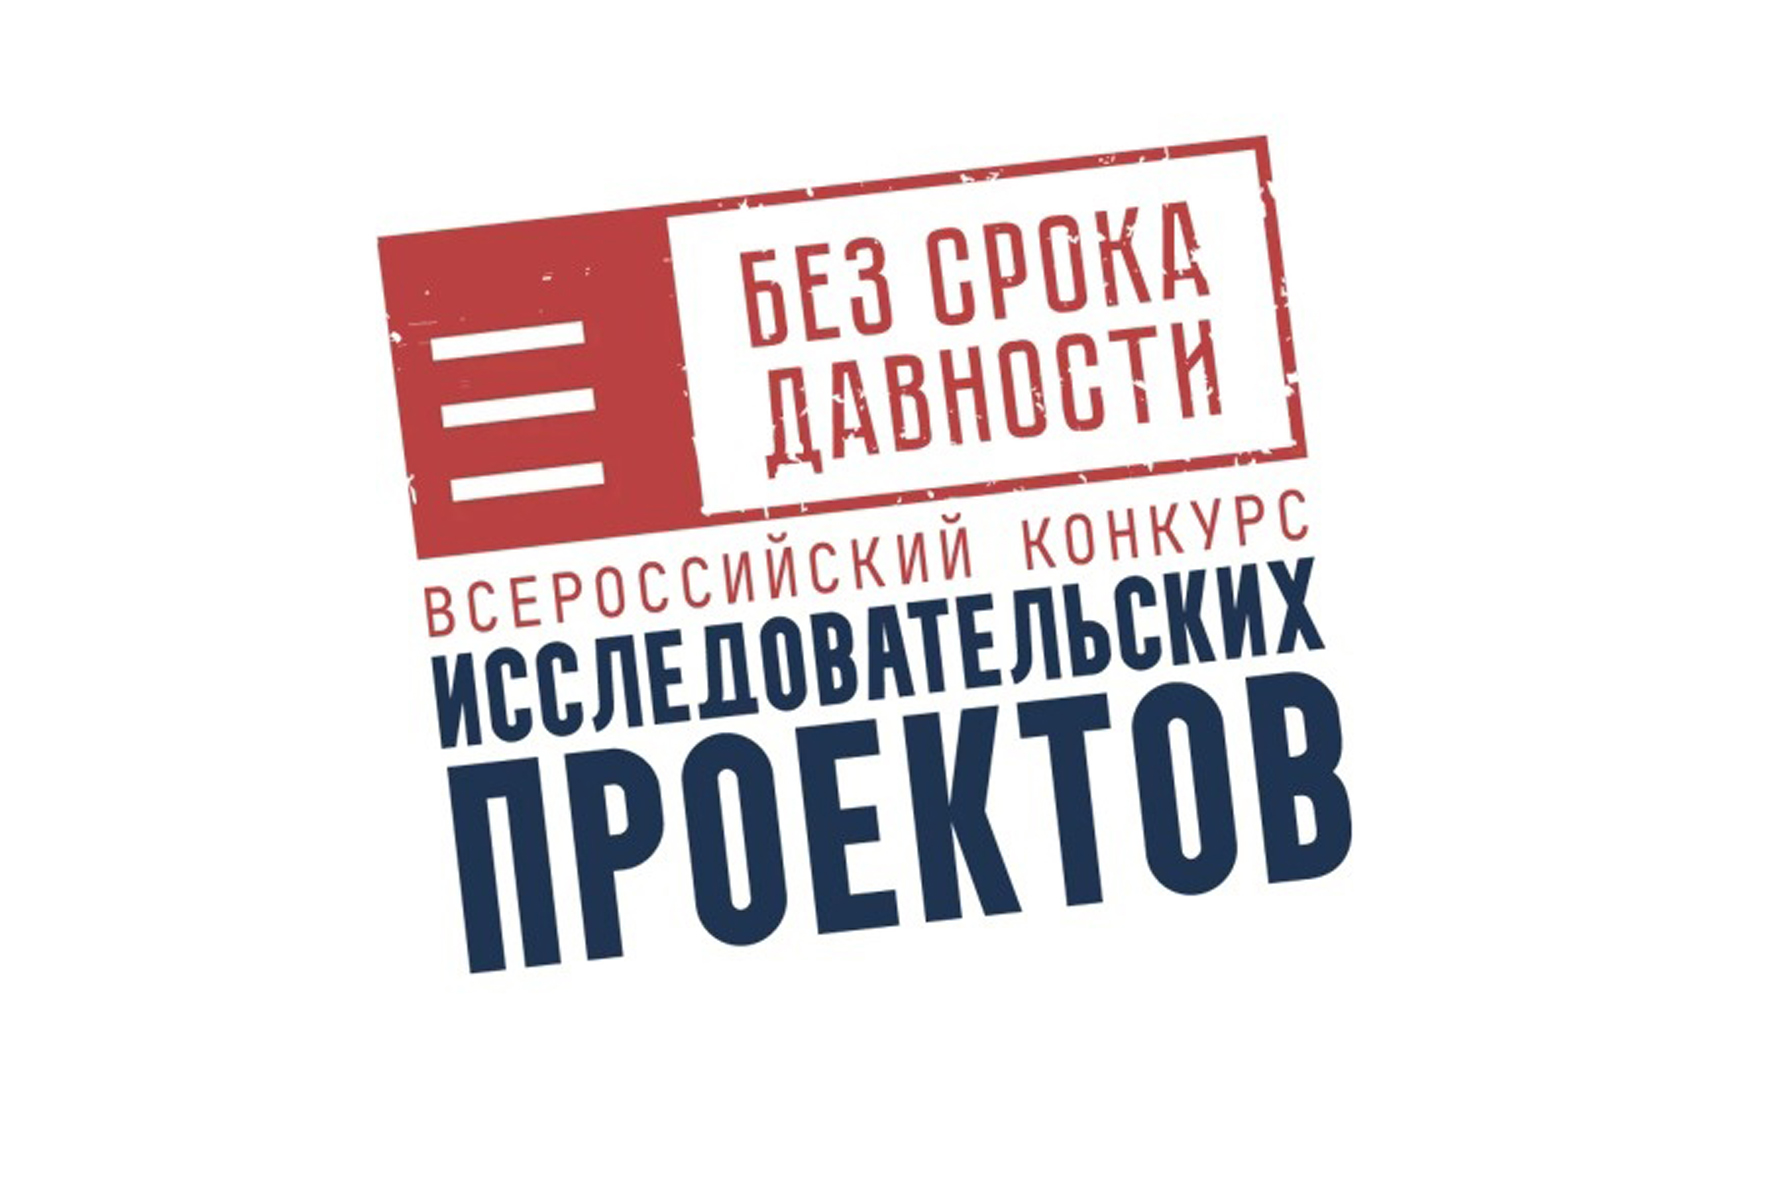 Лого конкурса